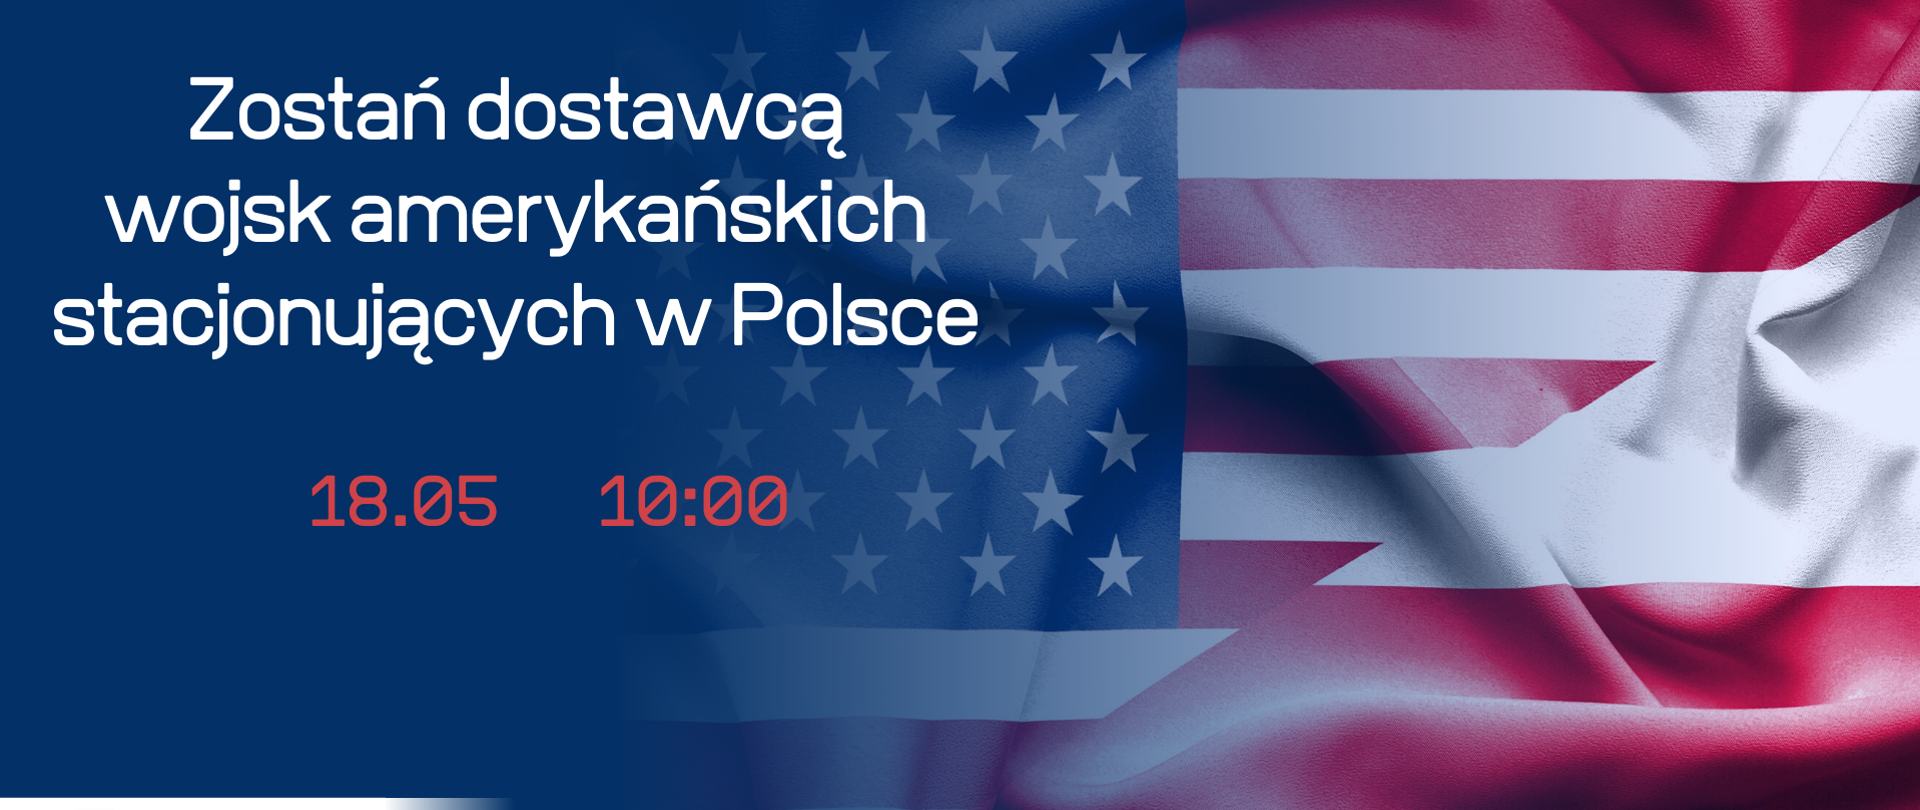 napis na fladze polskiej i amerykańskiej połączonej w jedność